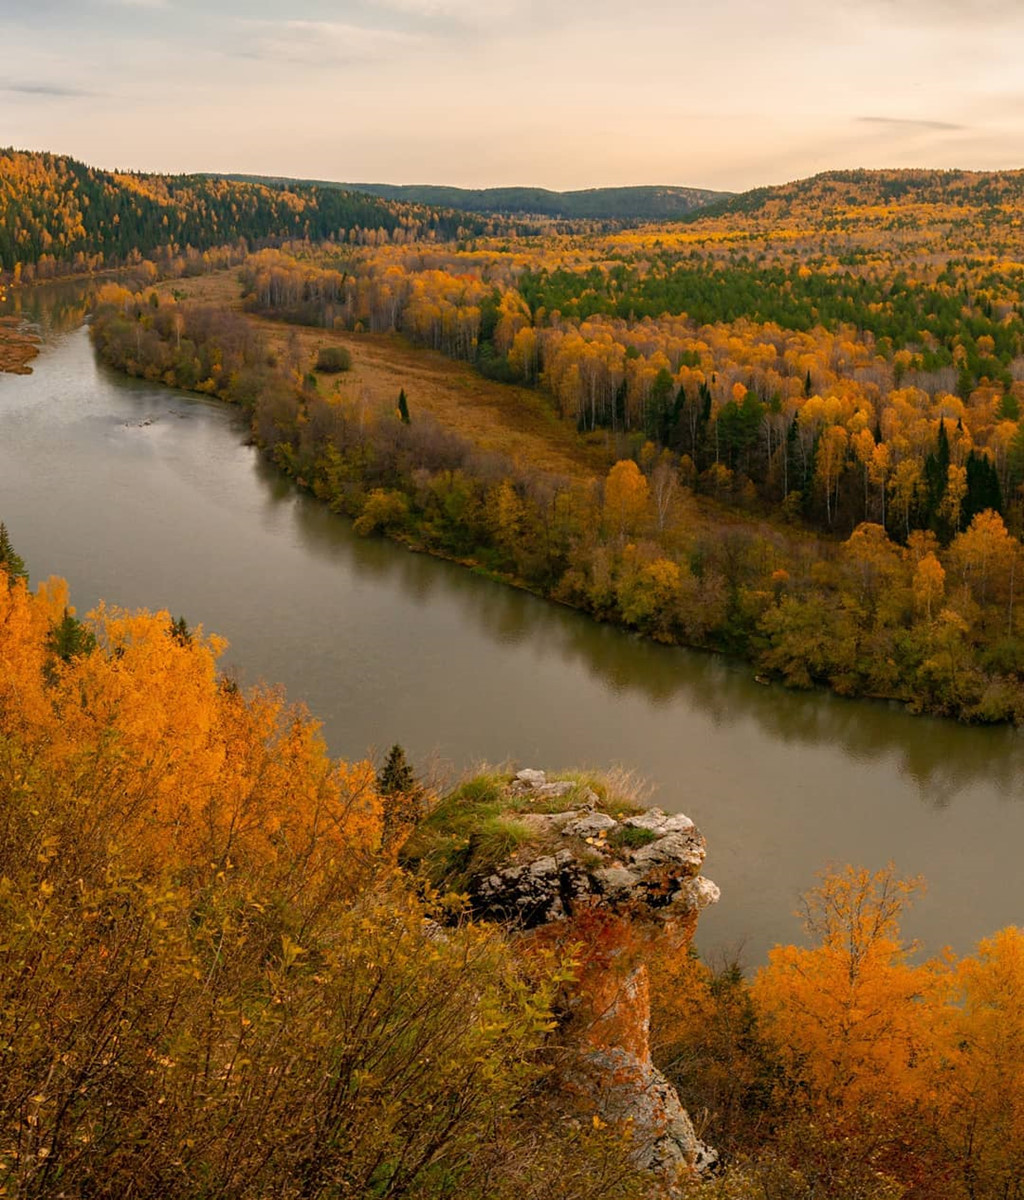 Đến Nga vào mùa thu, khi đất trời bừng lên những sắc vàng rực rỡ, cũng là lúc bạn được đắm mình trong những vùng thuỷ cùng thiên nhiên hoang dã hùng vĩ. Hãy tận hưởng vẻ đẹp của thiên nhiên khi cảnh quan đổ vàng tuyệt đẹp đang chờ đón bạn!